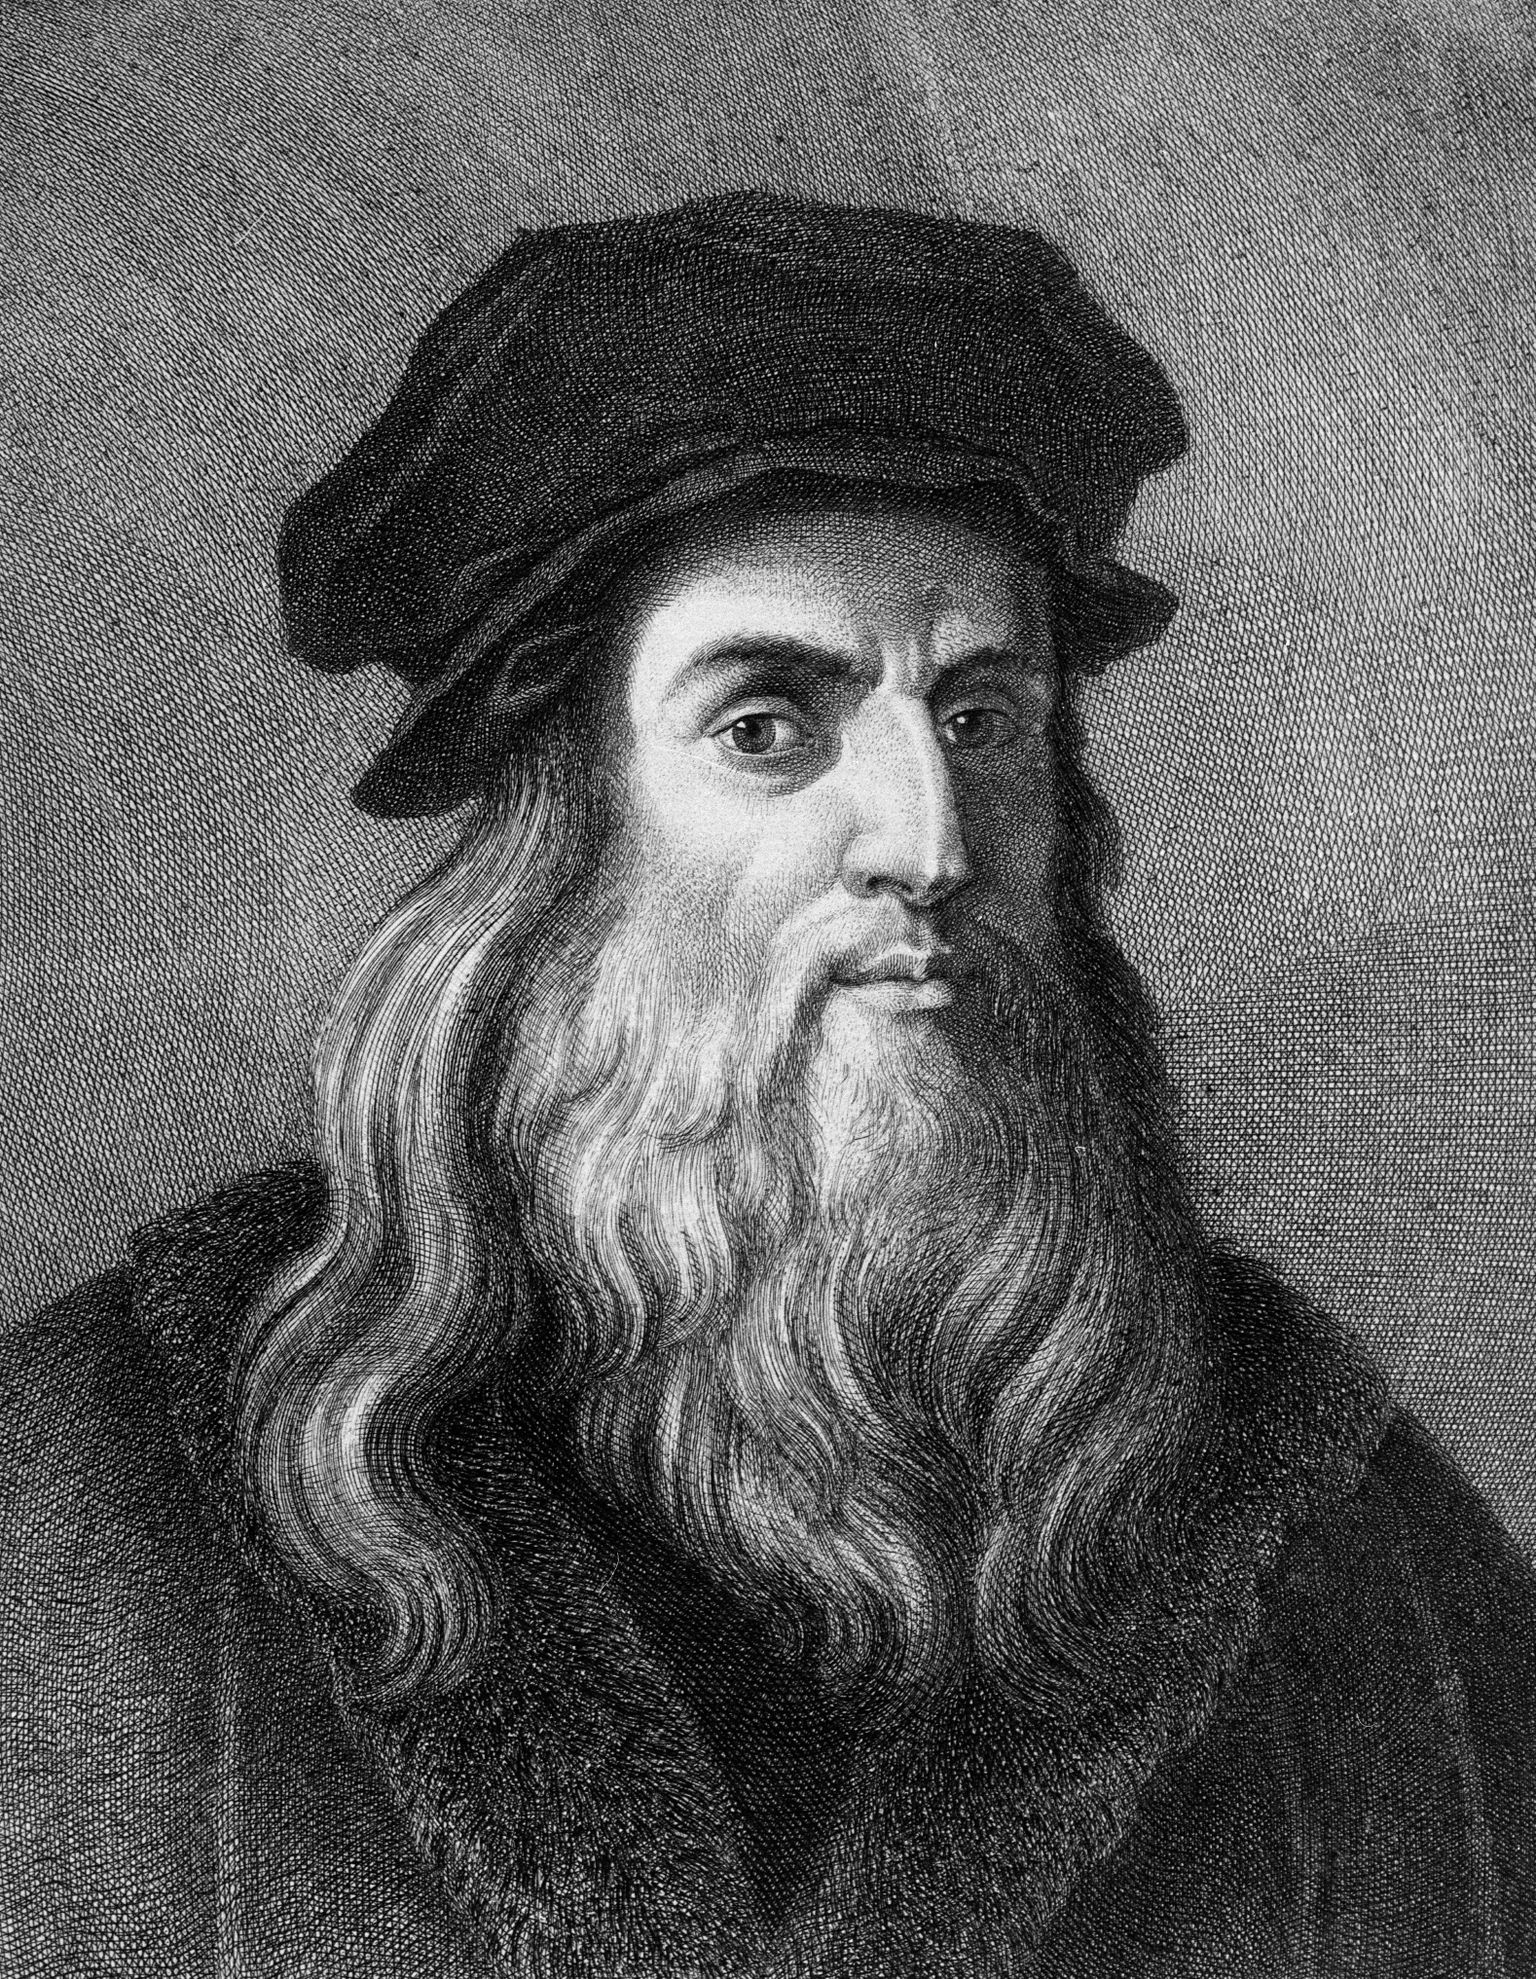 Joonistus, millel on kujutatud Itaalia renessansigeeniust Leonardo da Vincit (1452 - 1519)